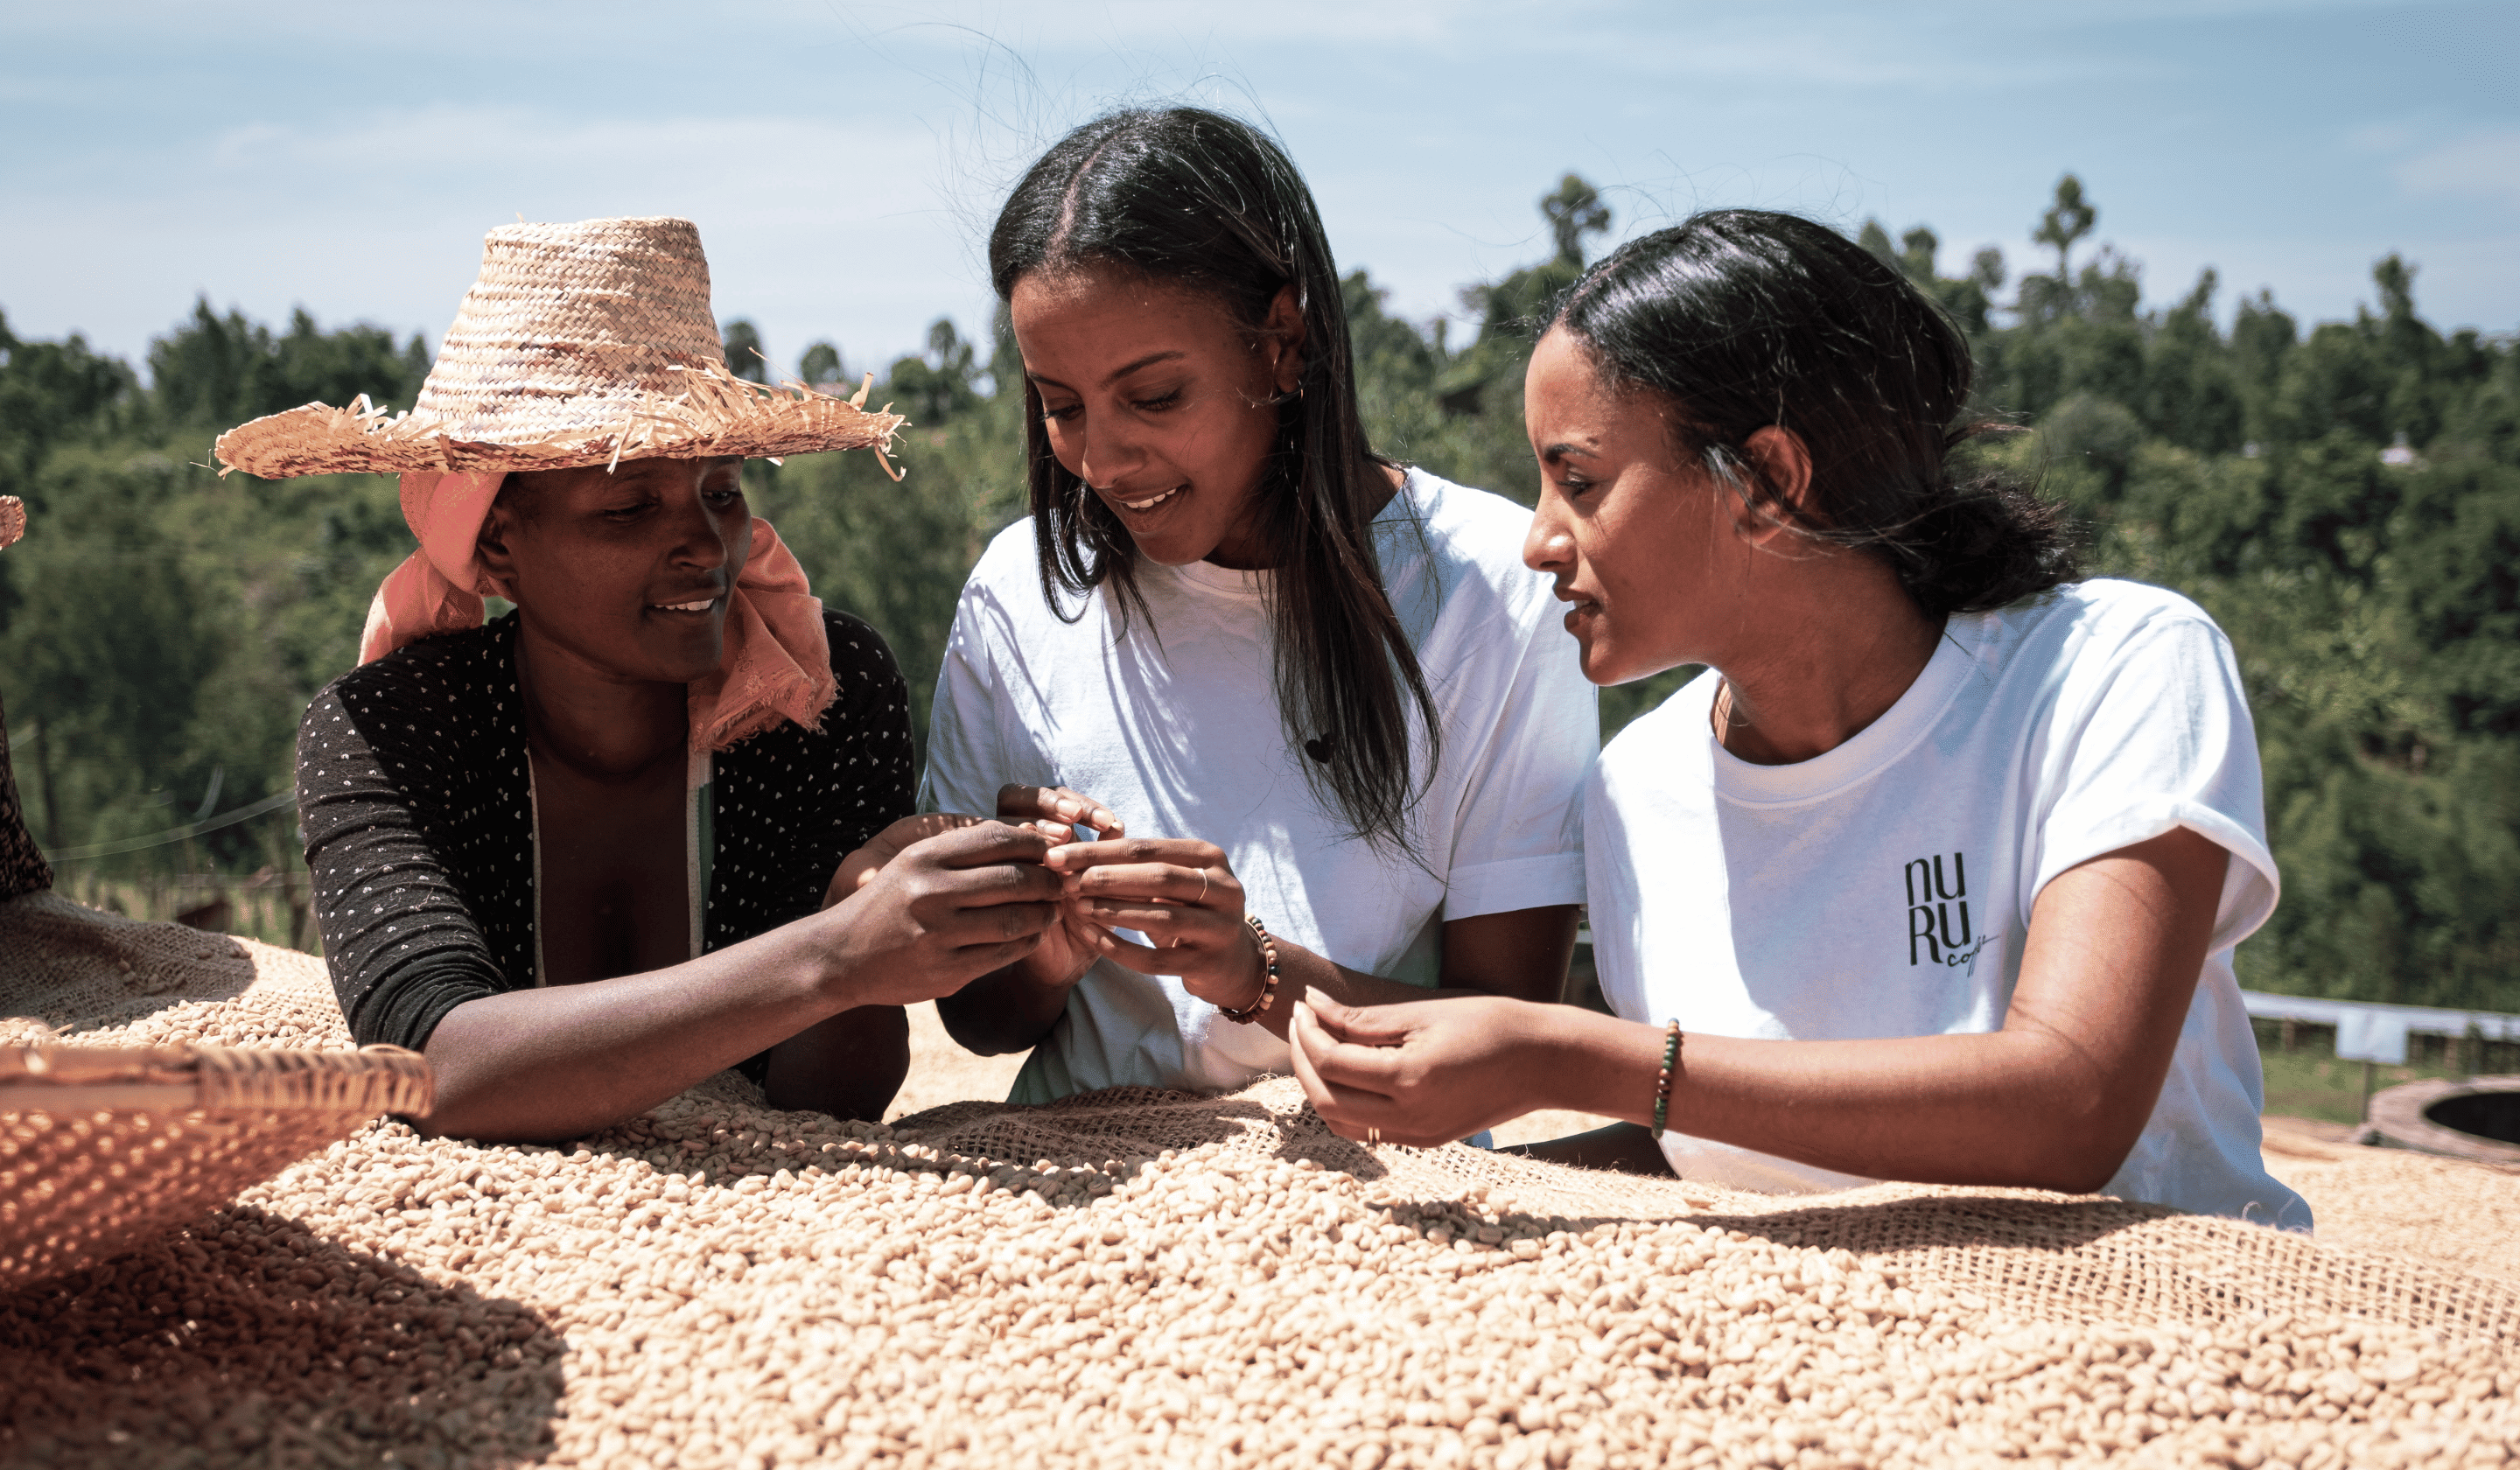 nuruCoffee wurde von den Schwestern Sali und Sara Nuru gegründet, die aus Liebe zu Äthiopien und gutem Kaffee beschlossen, ein Social Business zu gründen/ Bio-Kaffee mit social impact aus fairem Handel und nachhaltig produziert in Äthiopien.  